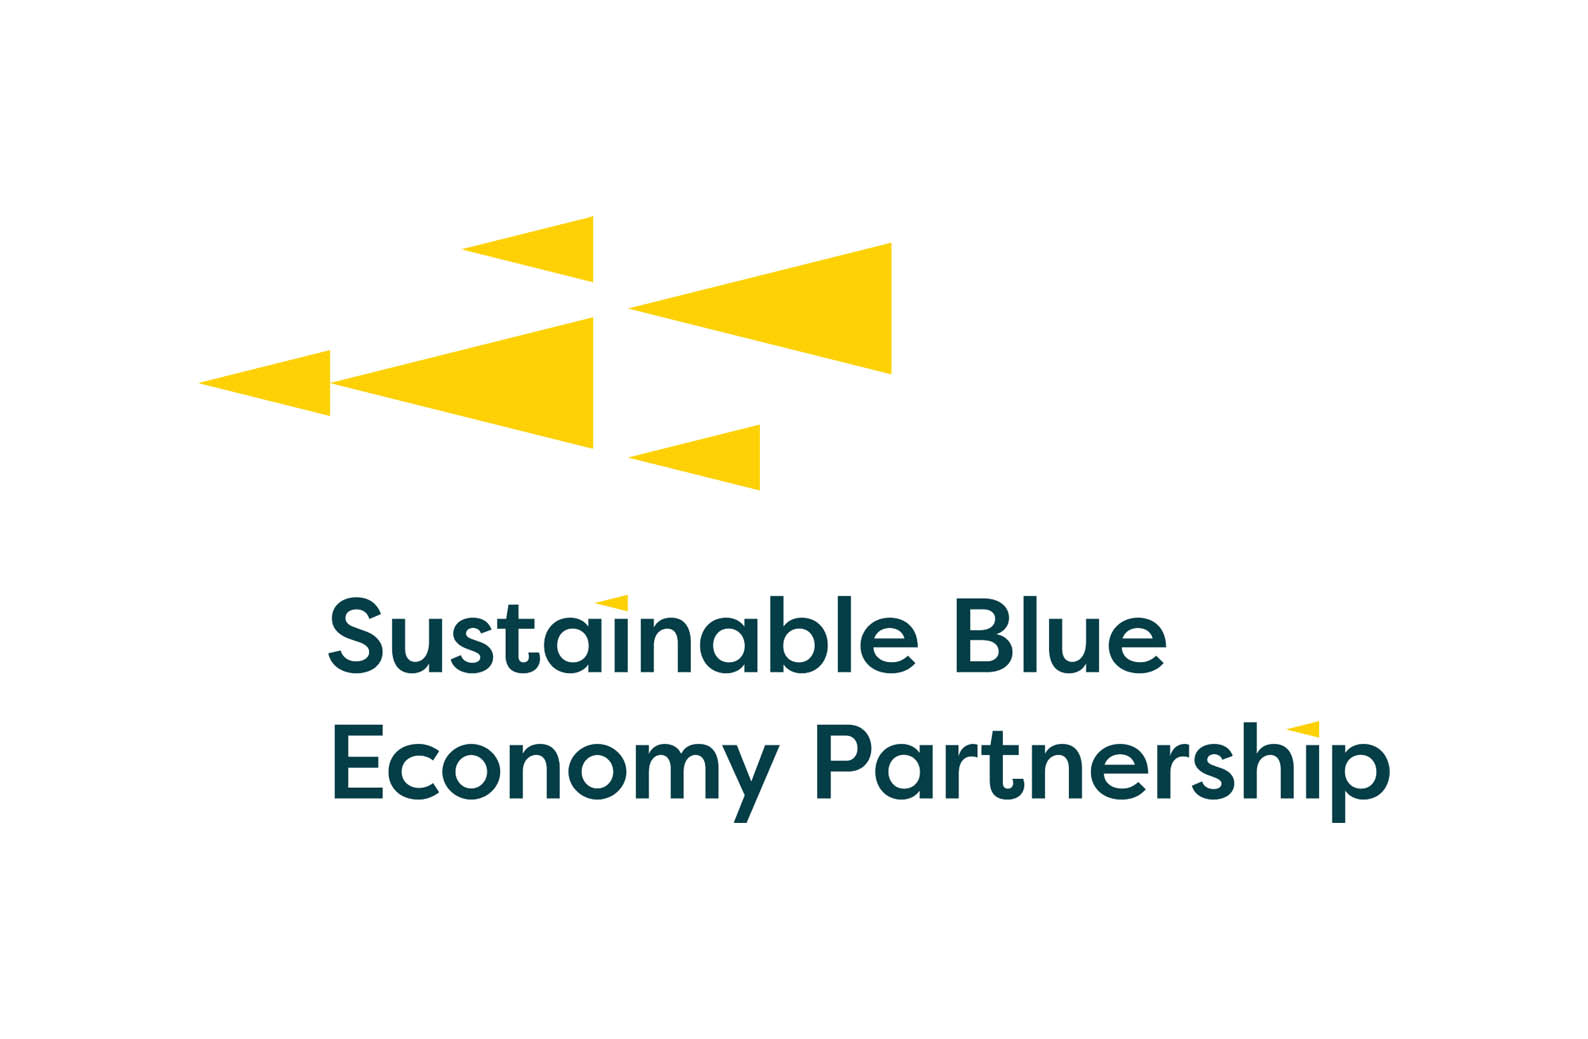 European Sustainable Blue Economy Partnership